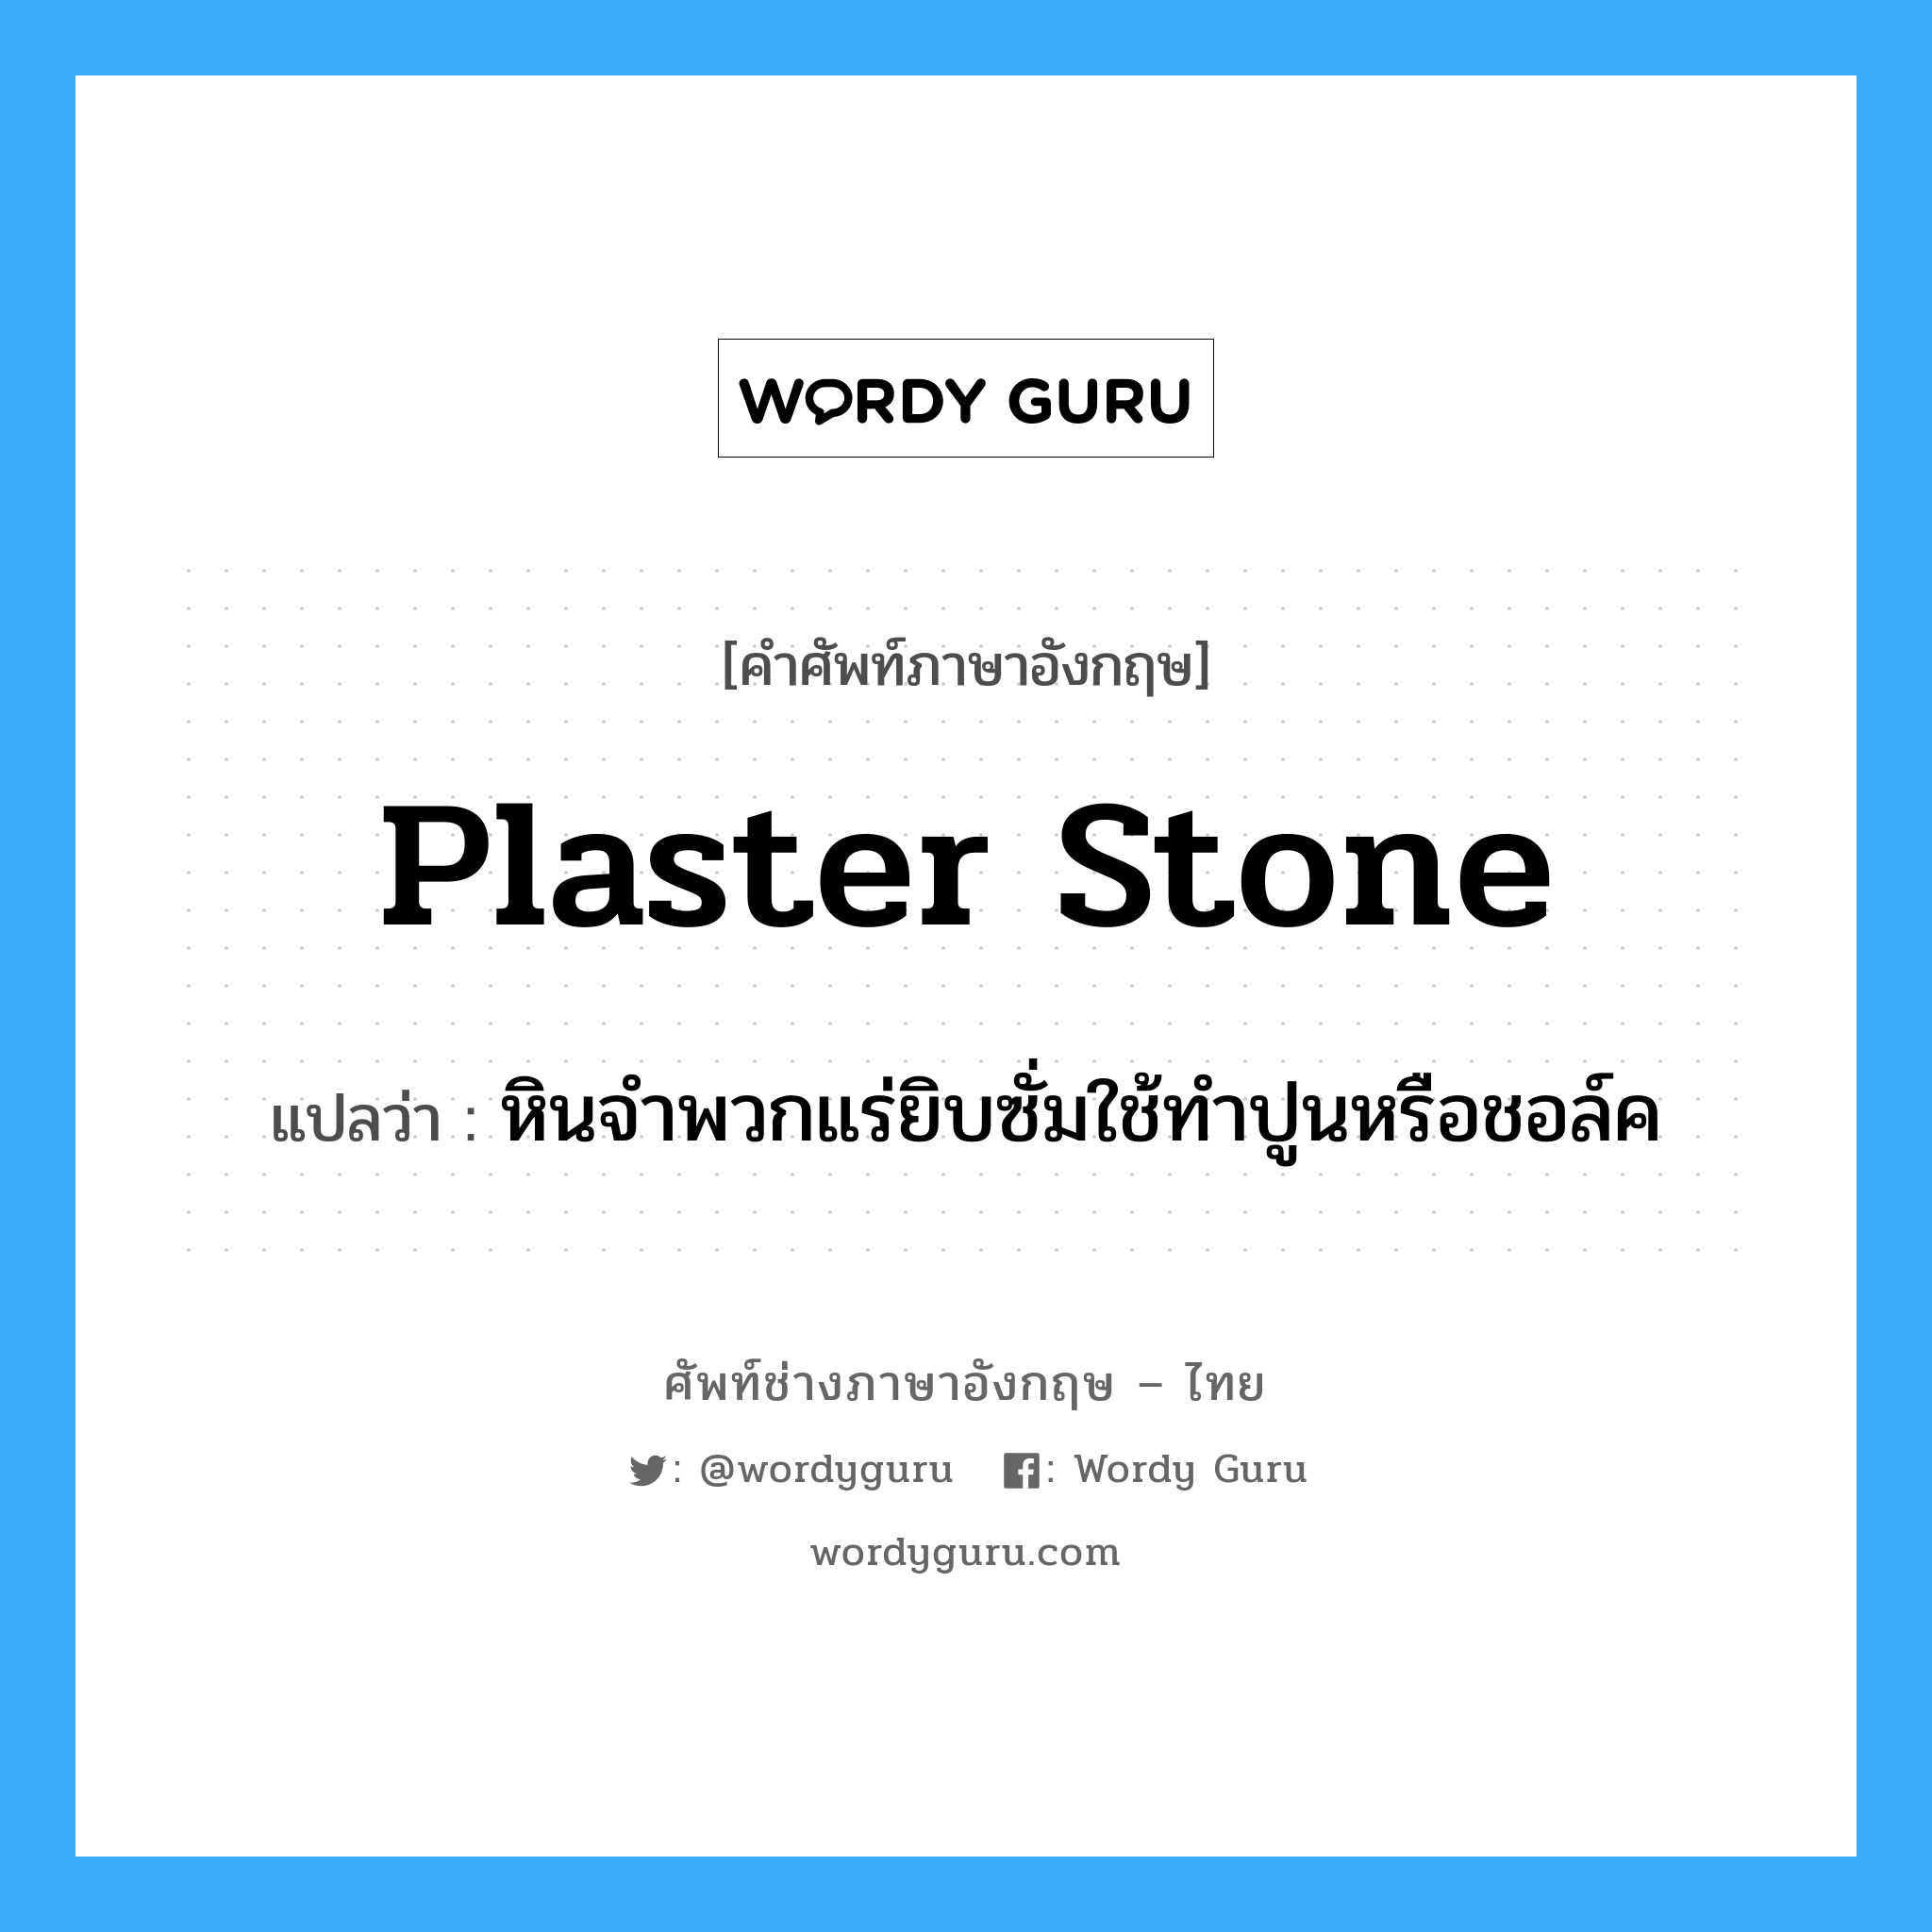 plaster stone แปลว่า?, คำศัพท์ช่างภาษาอังกฤษ - ไทย plaster stone คำศัพท์ภาษาอังกฤษ plaster stone แปลว่า หินจำพวกแร่ยิบซั่มใช้ทำปูนหรือชอล์ค